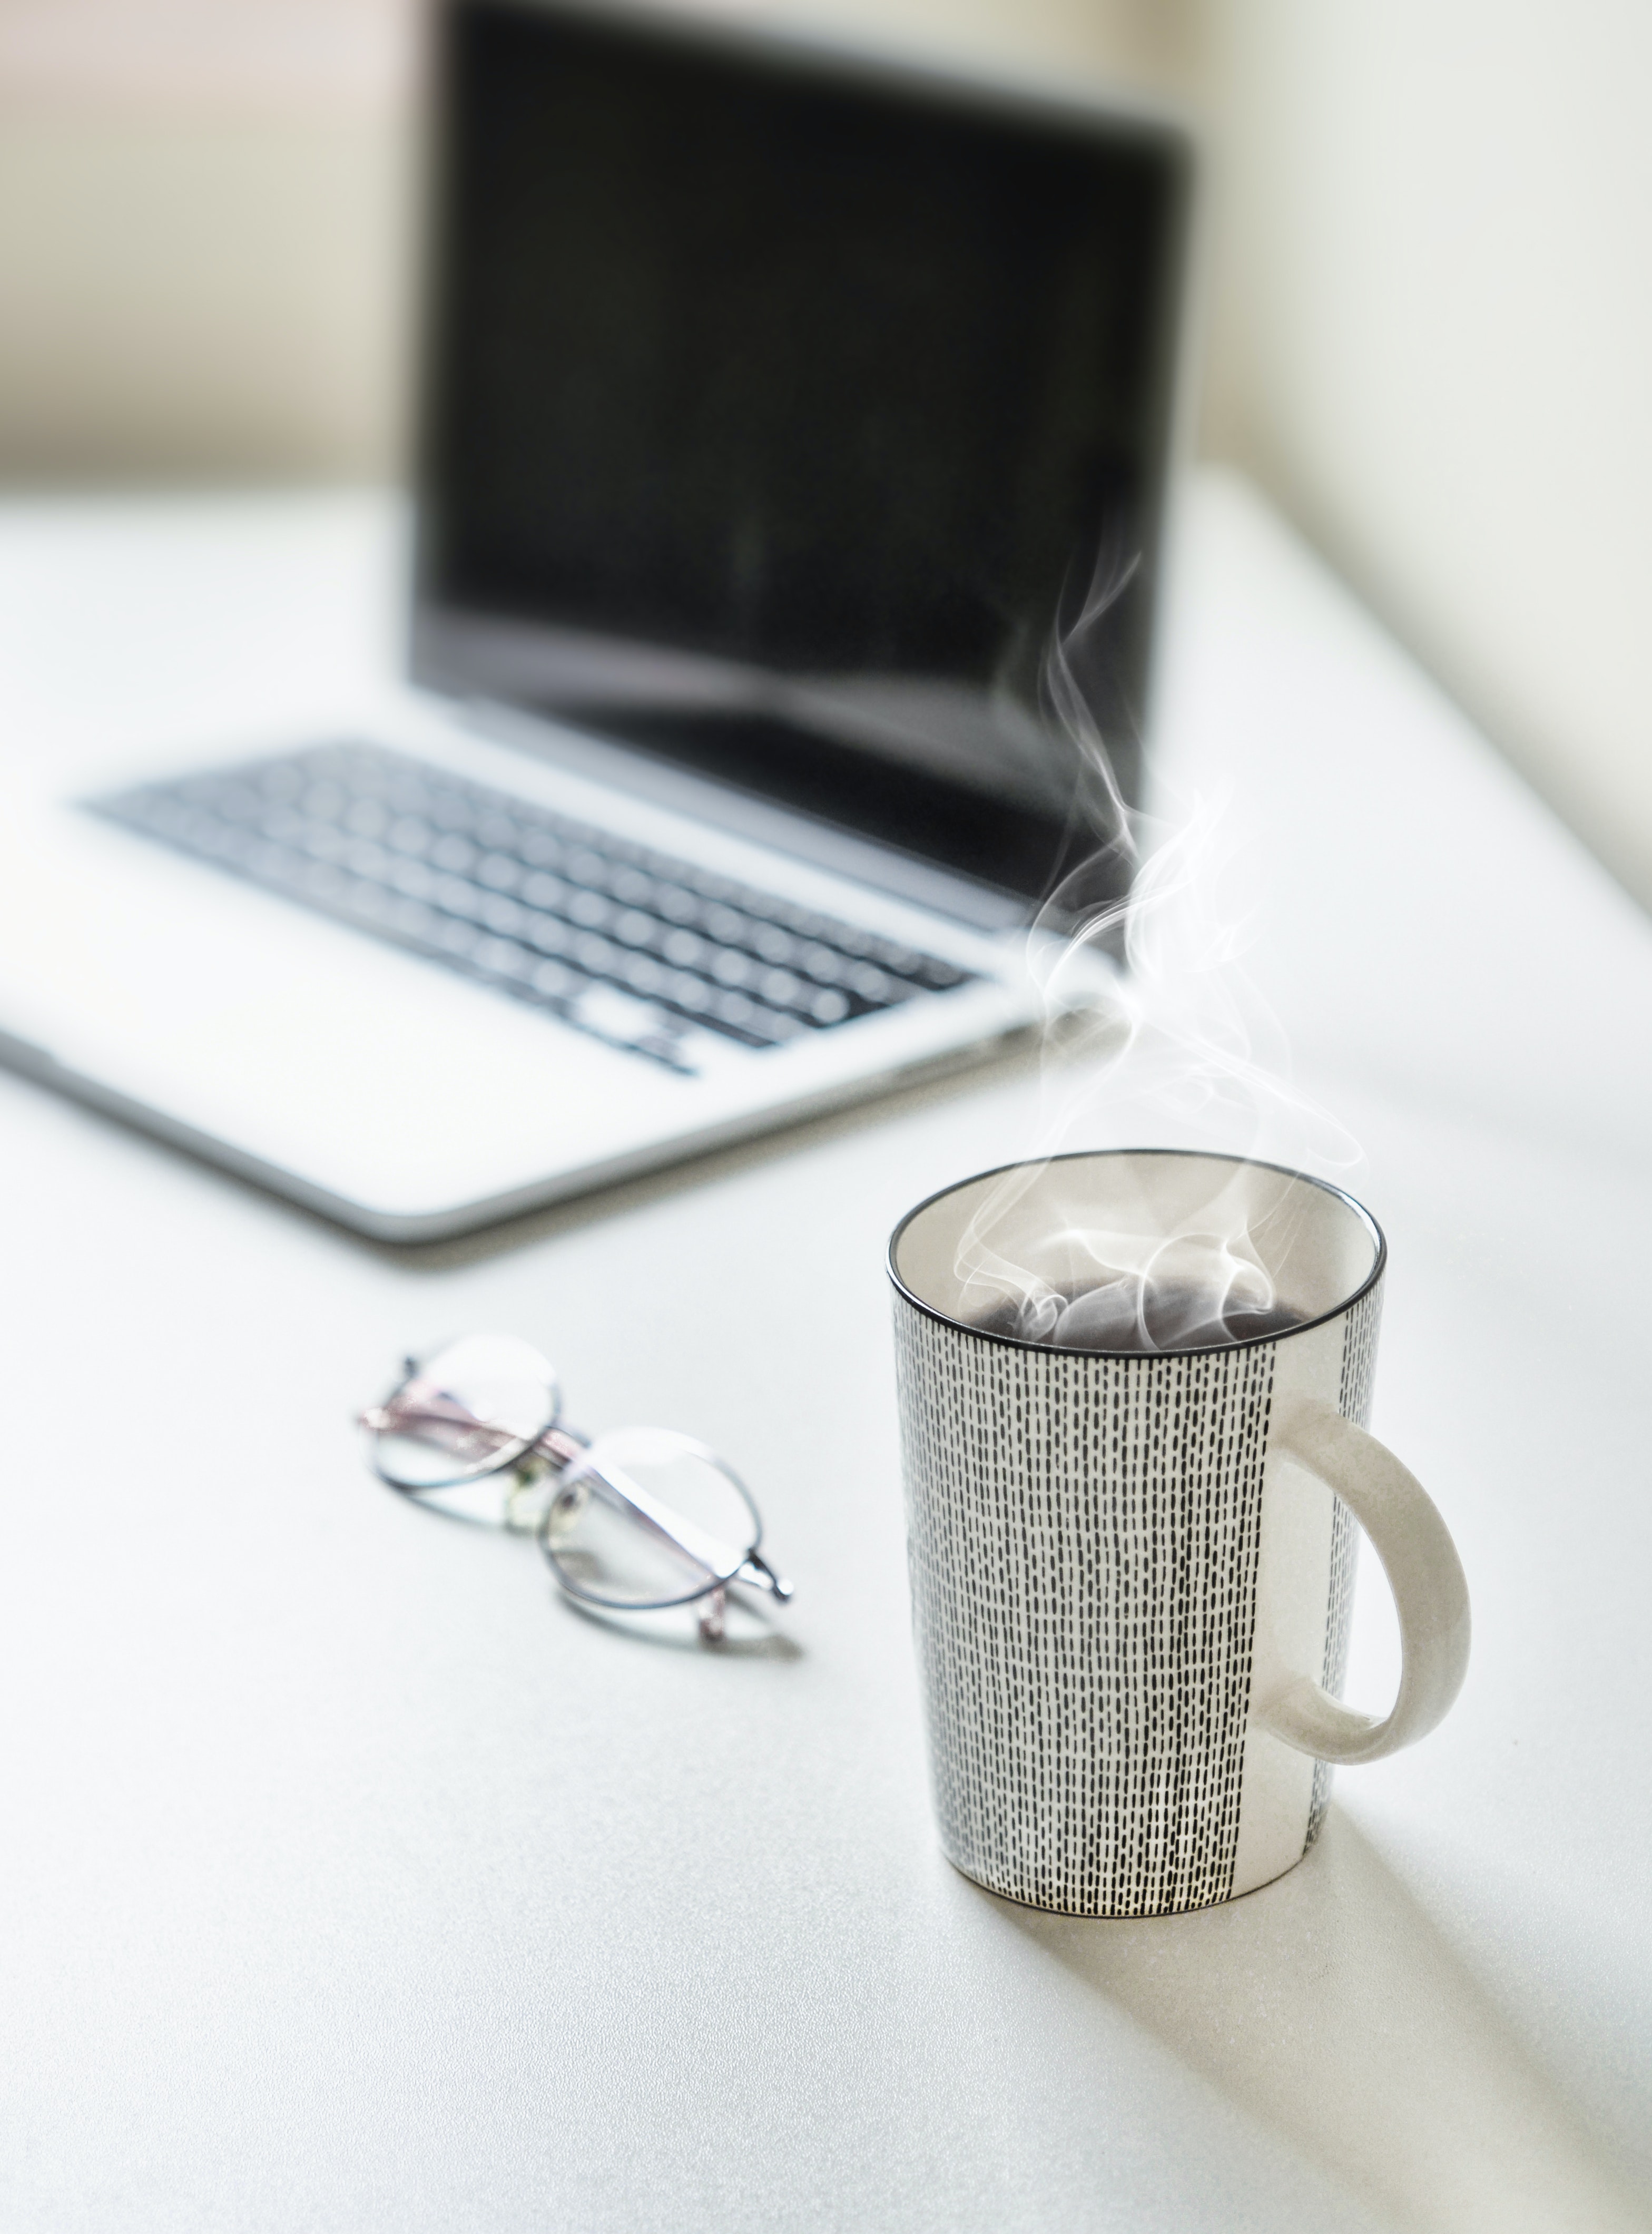 Красивая фотография ноутбука на столе с чашкой кофе